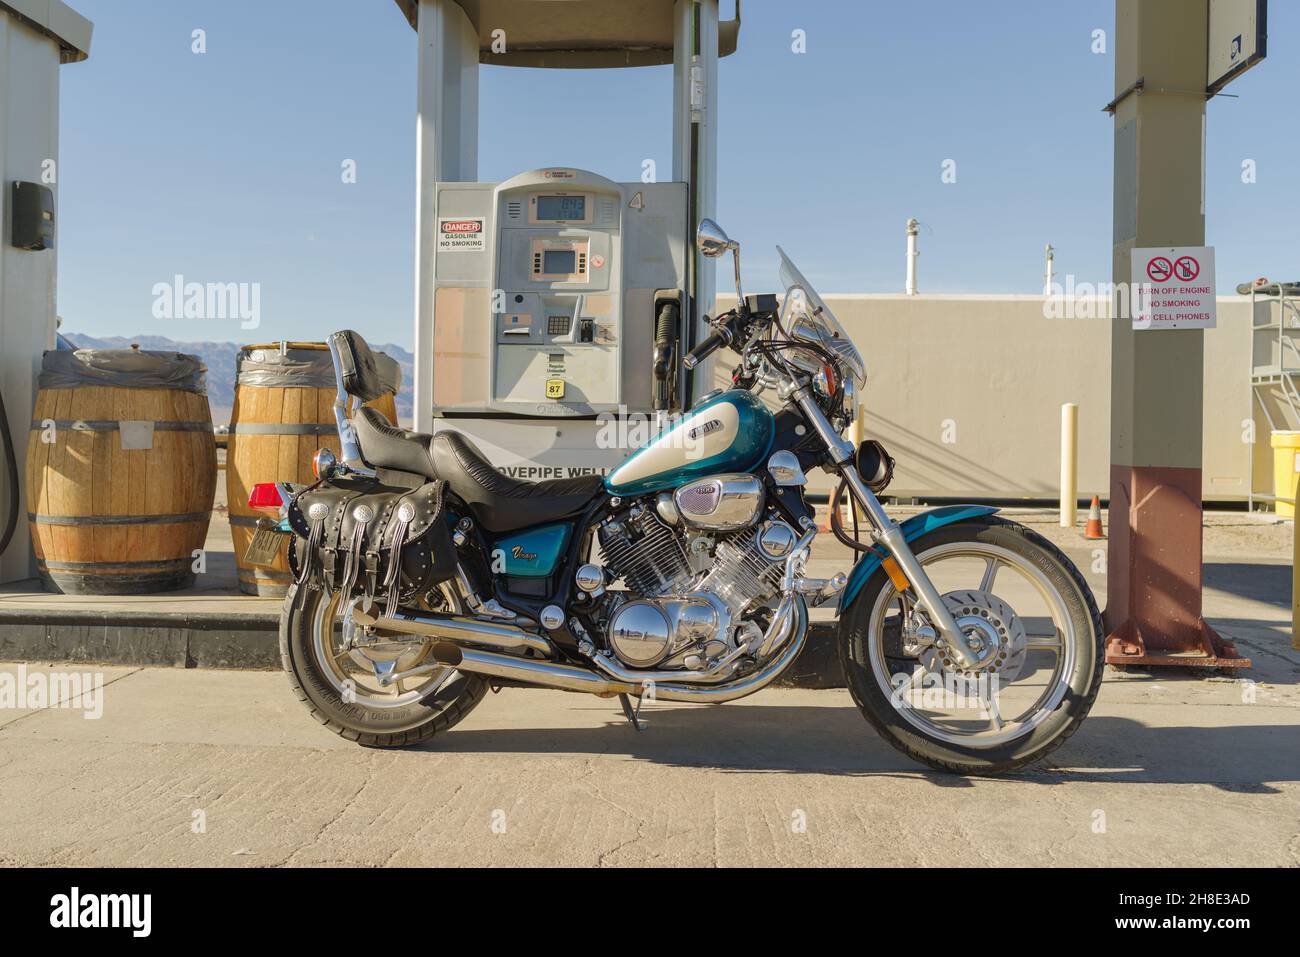 1994 moto Yamaha Virago in mostra in una stazione di servizio a Stovepipe Well, Death Valley, California. Foto Stock